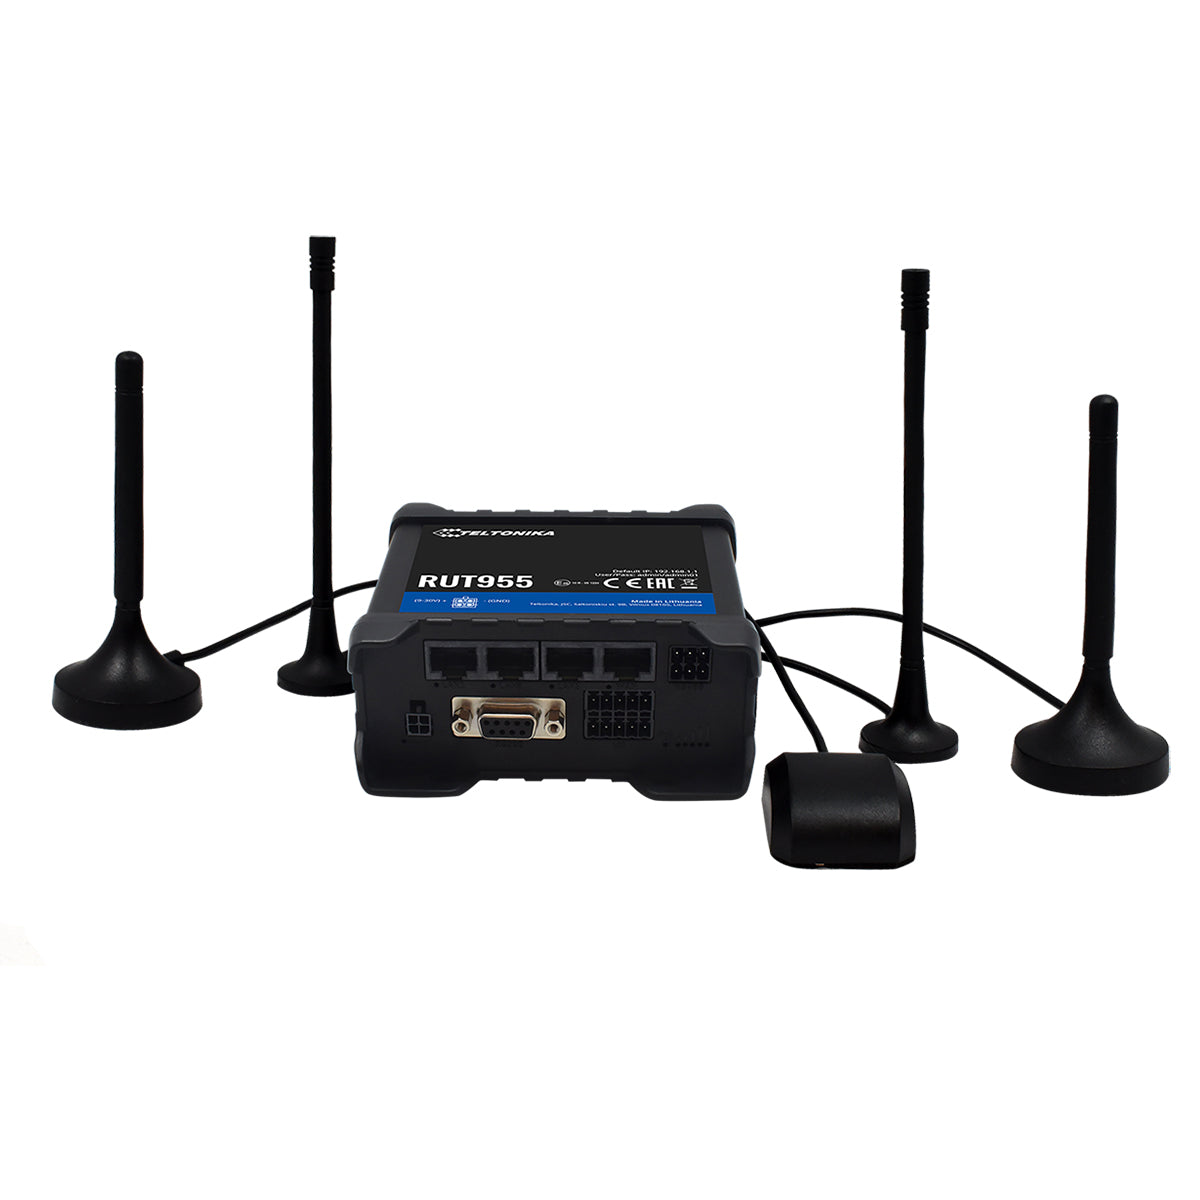 RUT955, Ruteador 4G/LTE (Cat 4) 3G, 2G, Doble SIM y WAN Failover, WiFi, 1xWAN, 3xLAN, RMS, GNSS, I/O, RS232, RS485, USB, SD